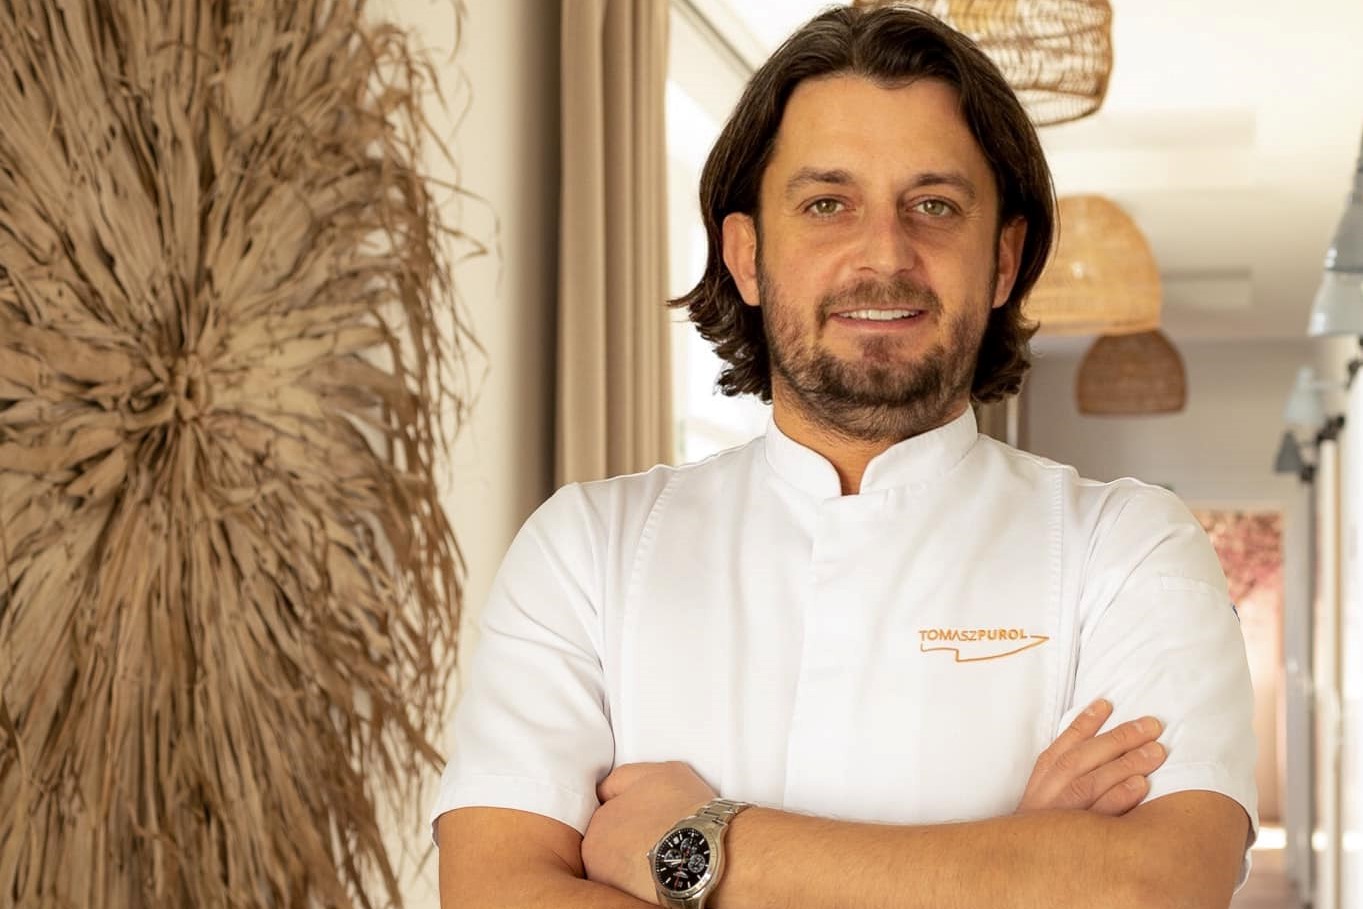 Tomasz Purol szefem kuchni sopockiej restauracji White Marlin